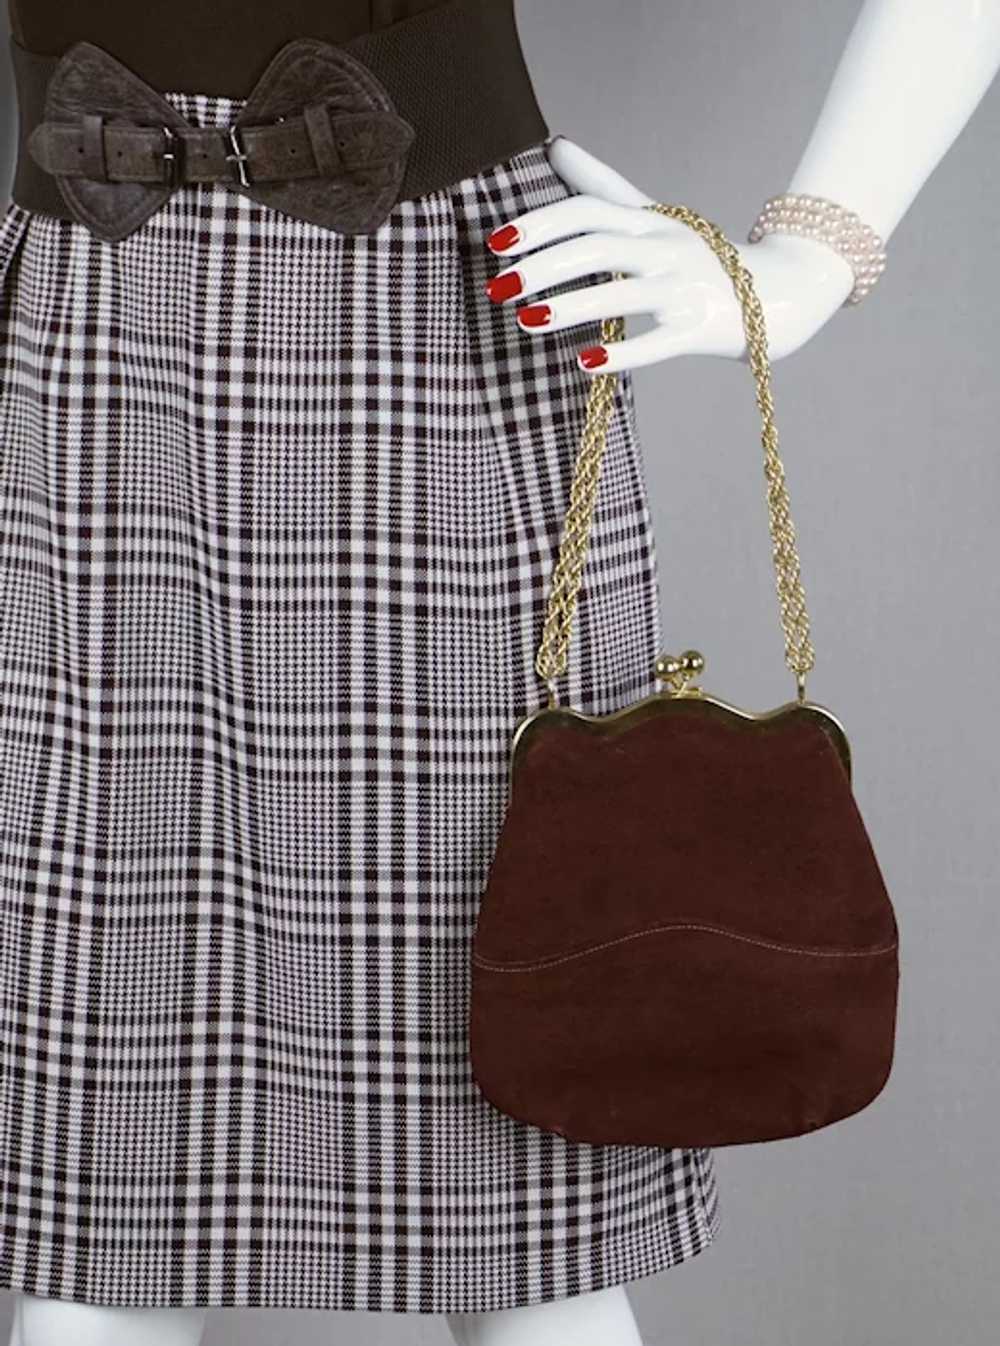 NOS 80s Brown Suede Envelope Handbag, Top Handle,… - image 4